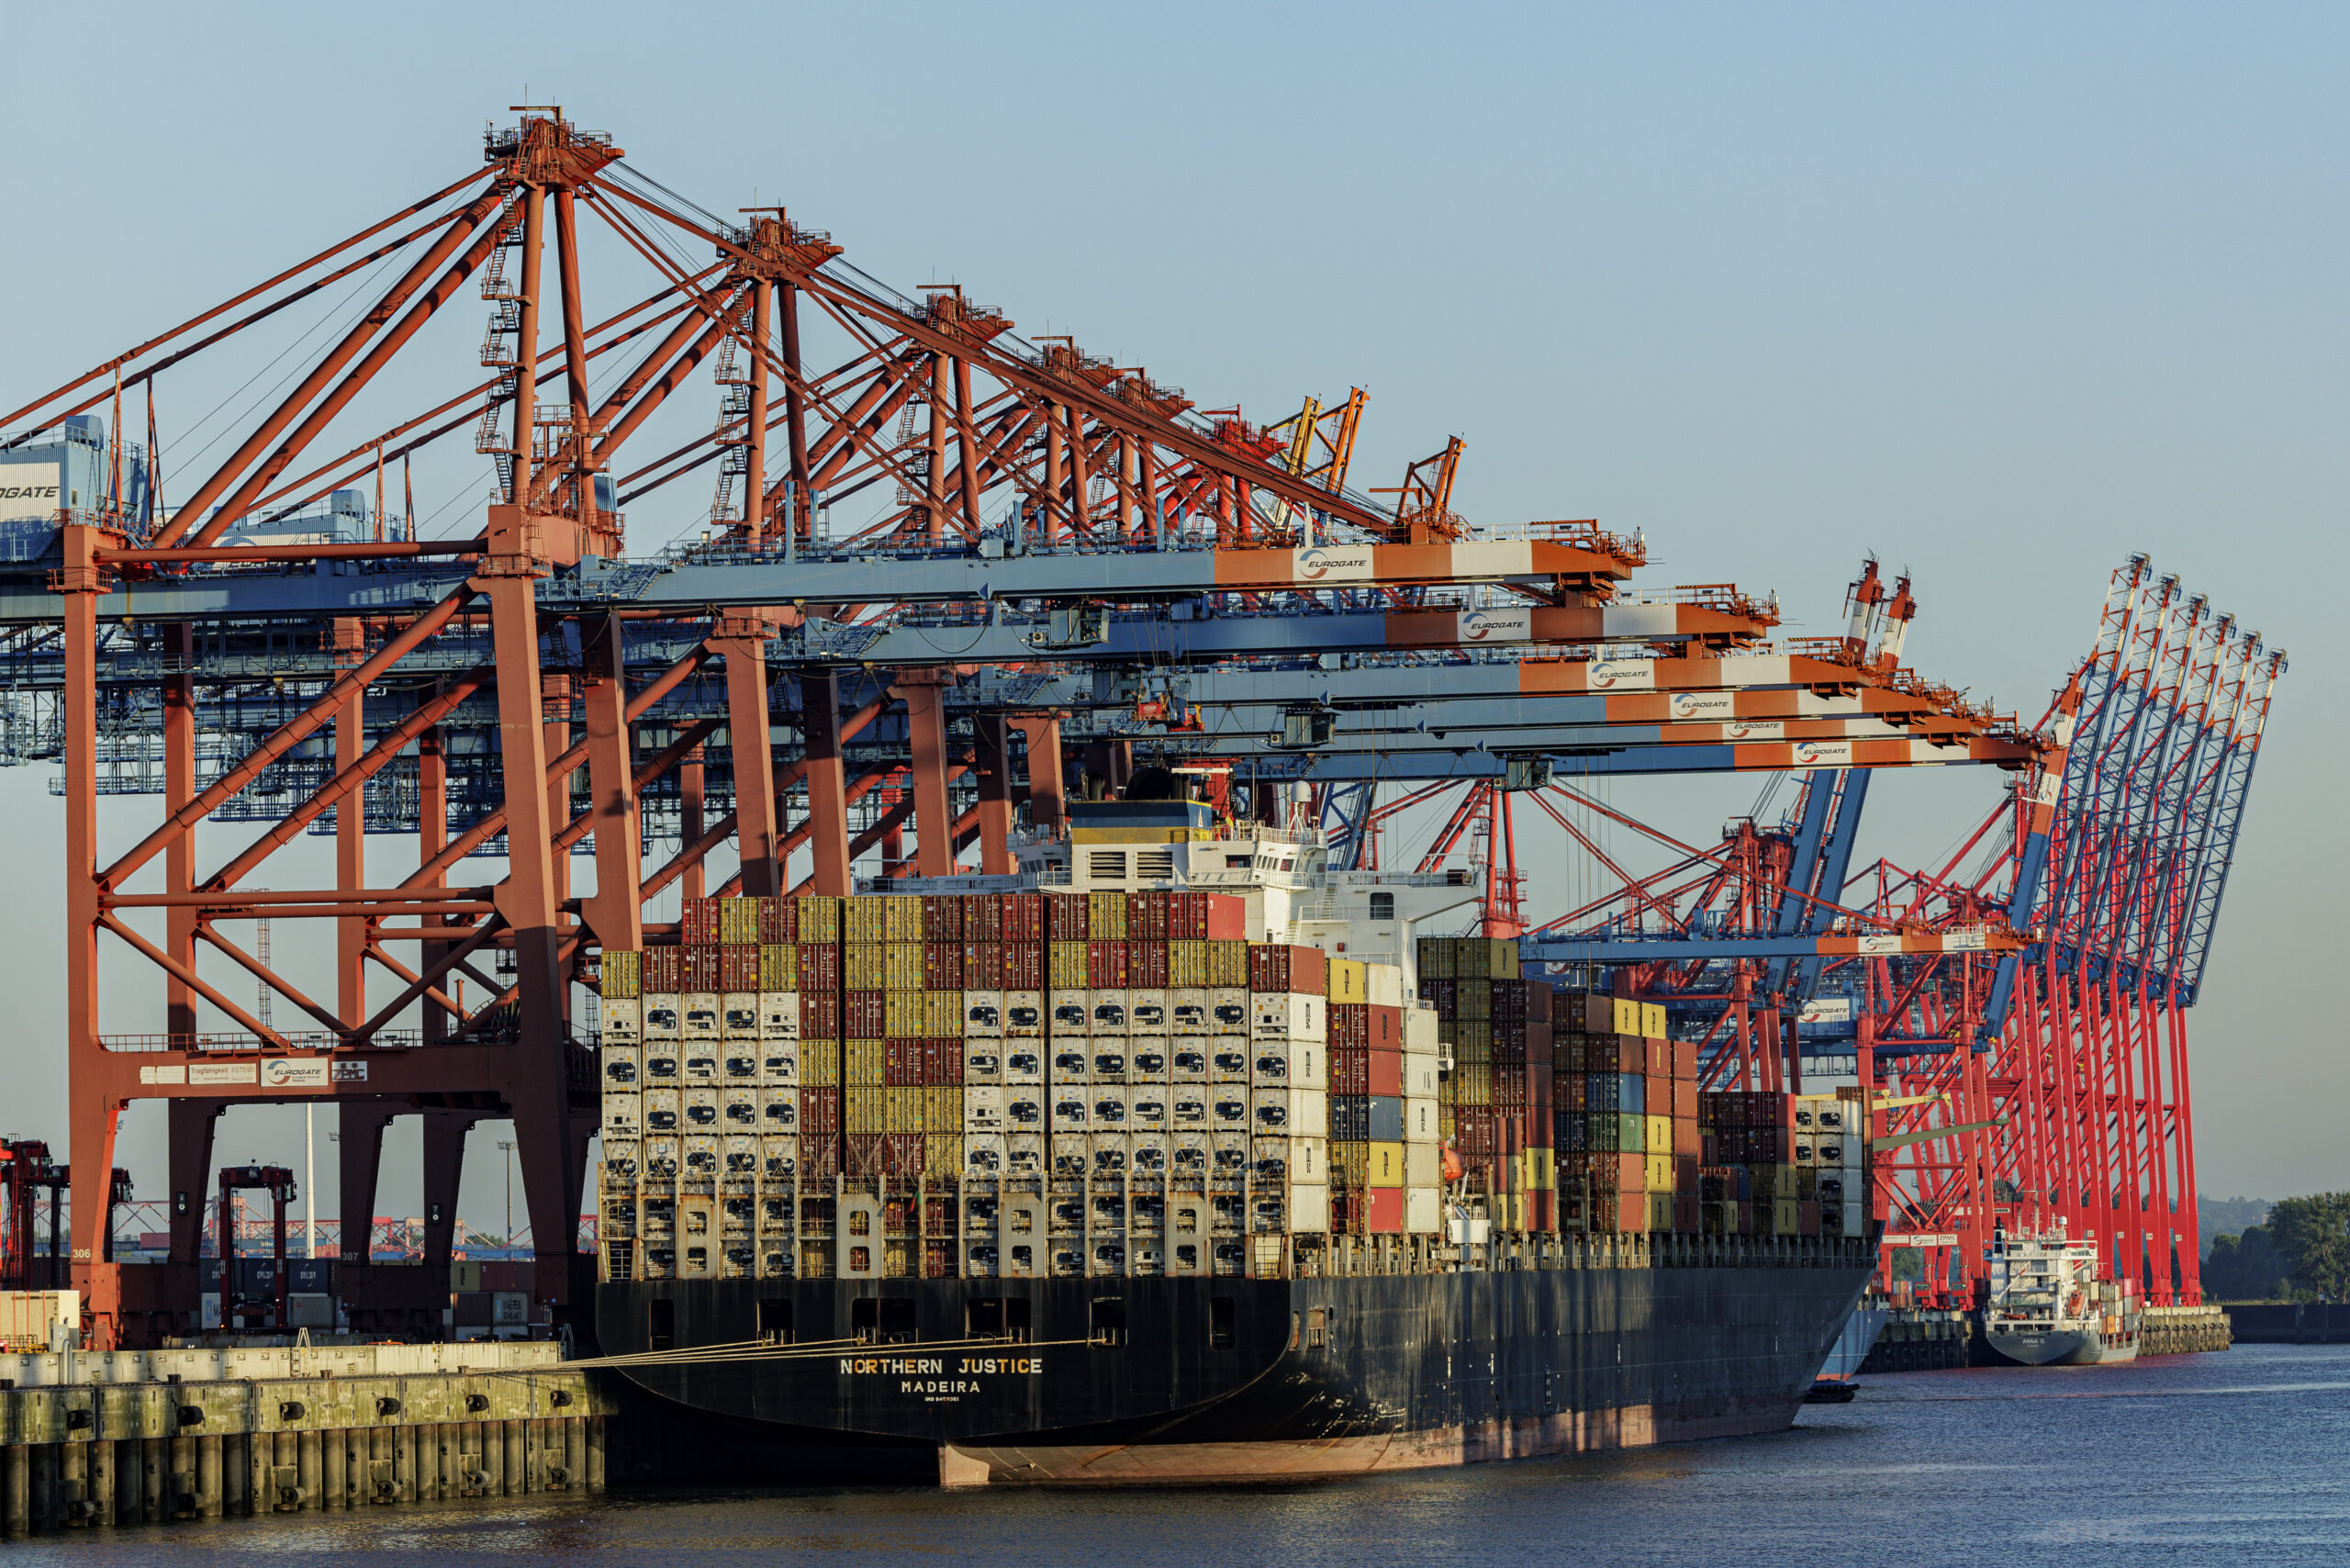 Das Containerschiff „Northern Justice“ liegt zur Abfertigung an den Terminals im Hamburger Hafen.